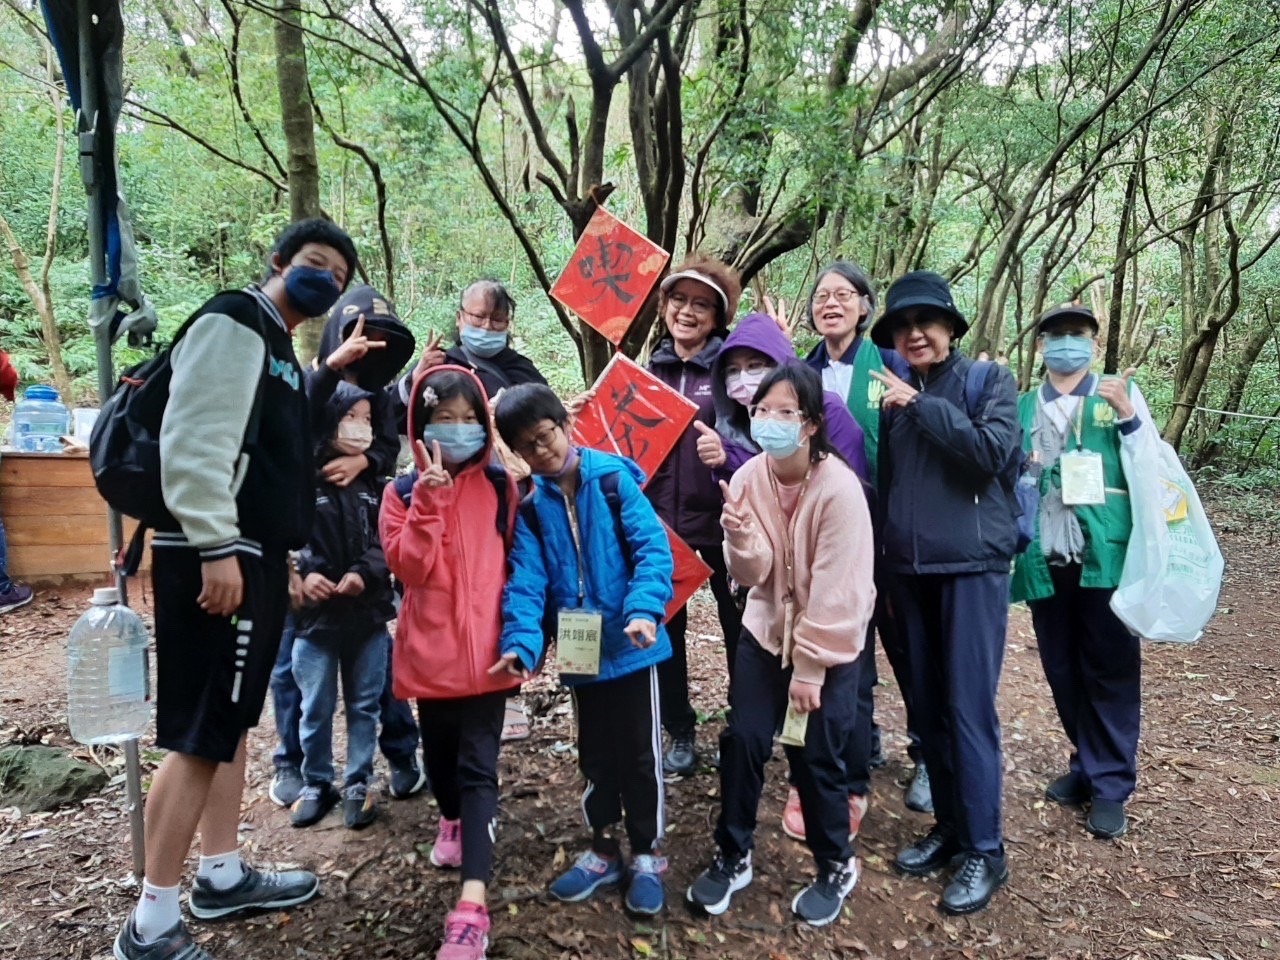 慈基會會長柯瑤碧、副會長王瓊珠和受獎學生一起在園區步道體驗自然環境。